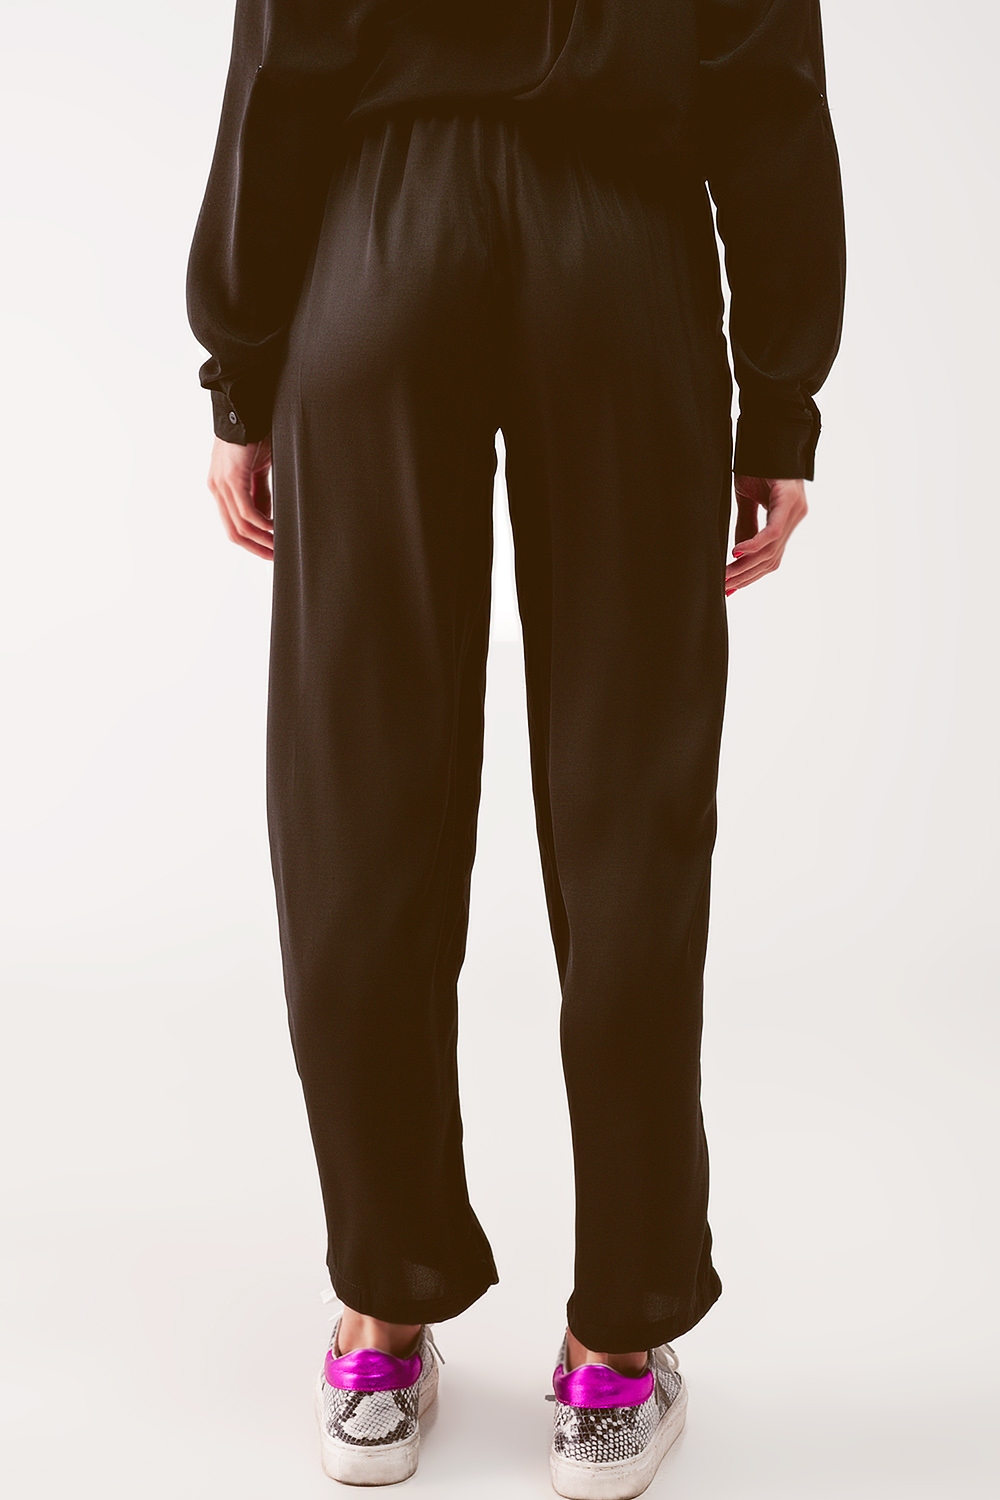 Pantalones negros de pernera ancha con cinturón